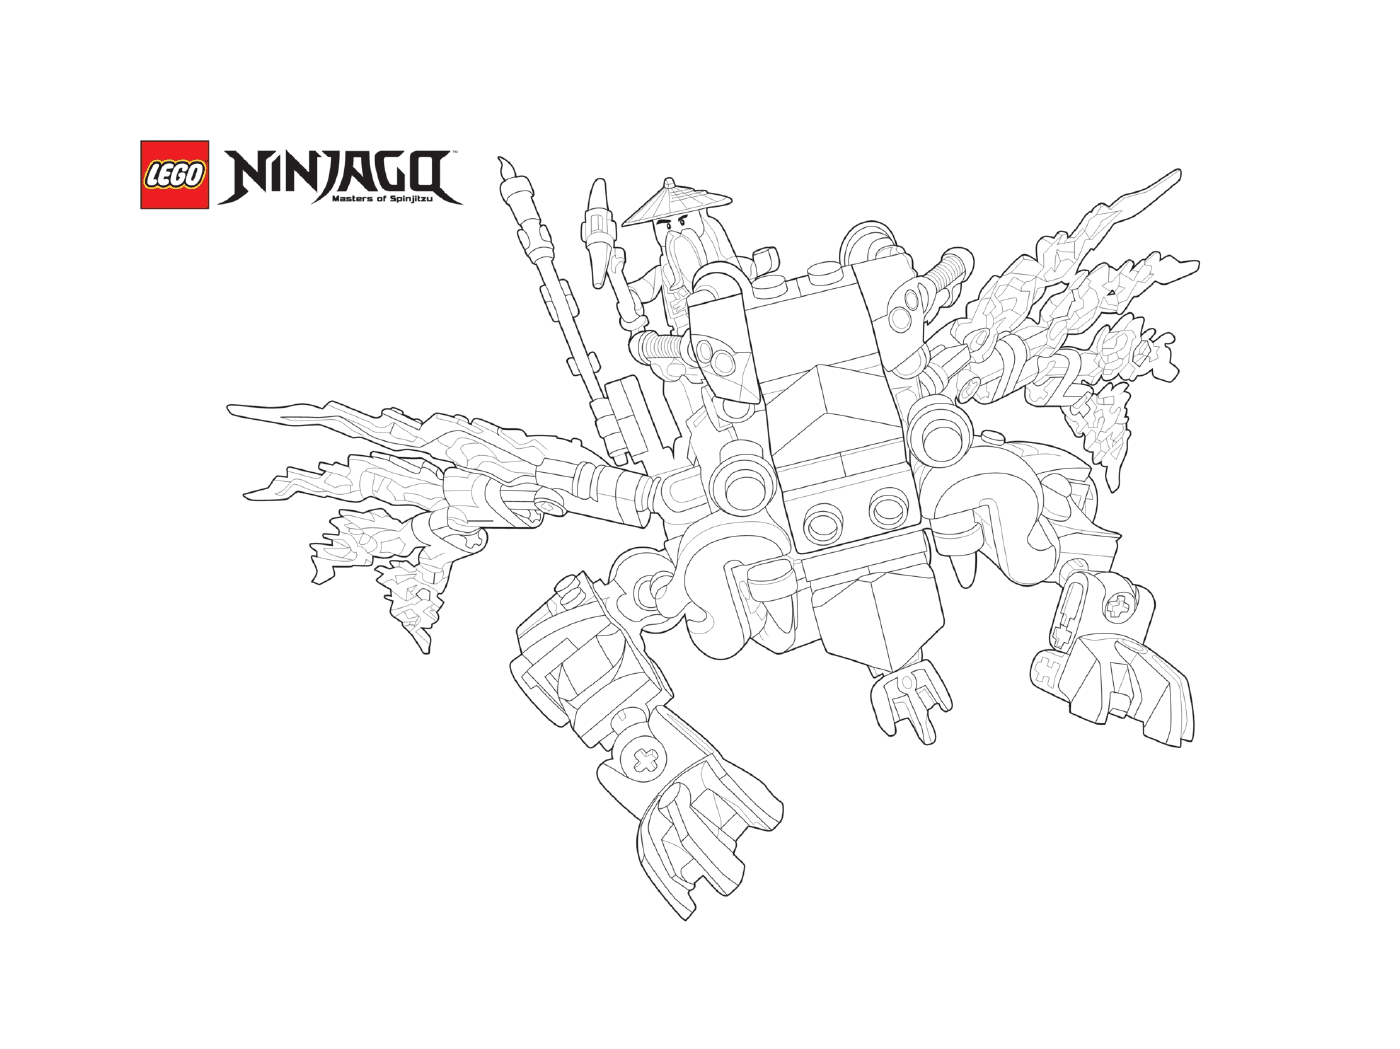   Ninjago sur dragon en vitesse 